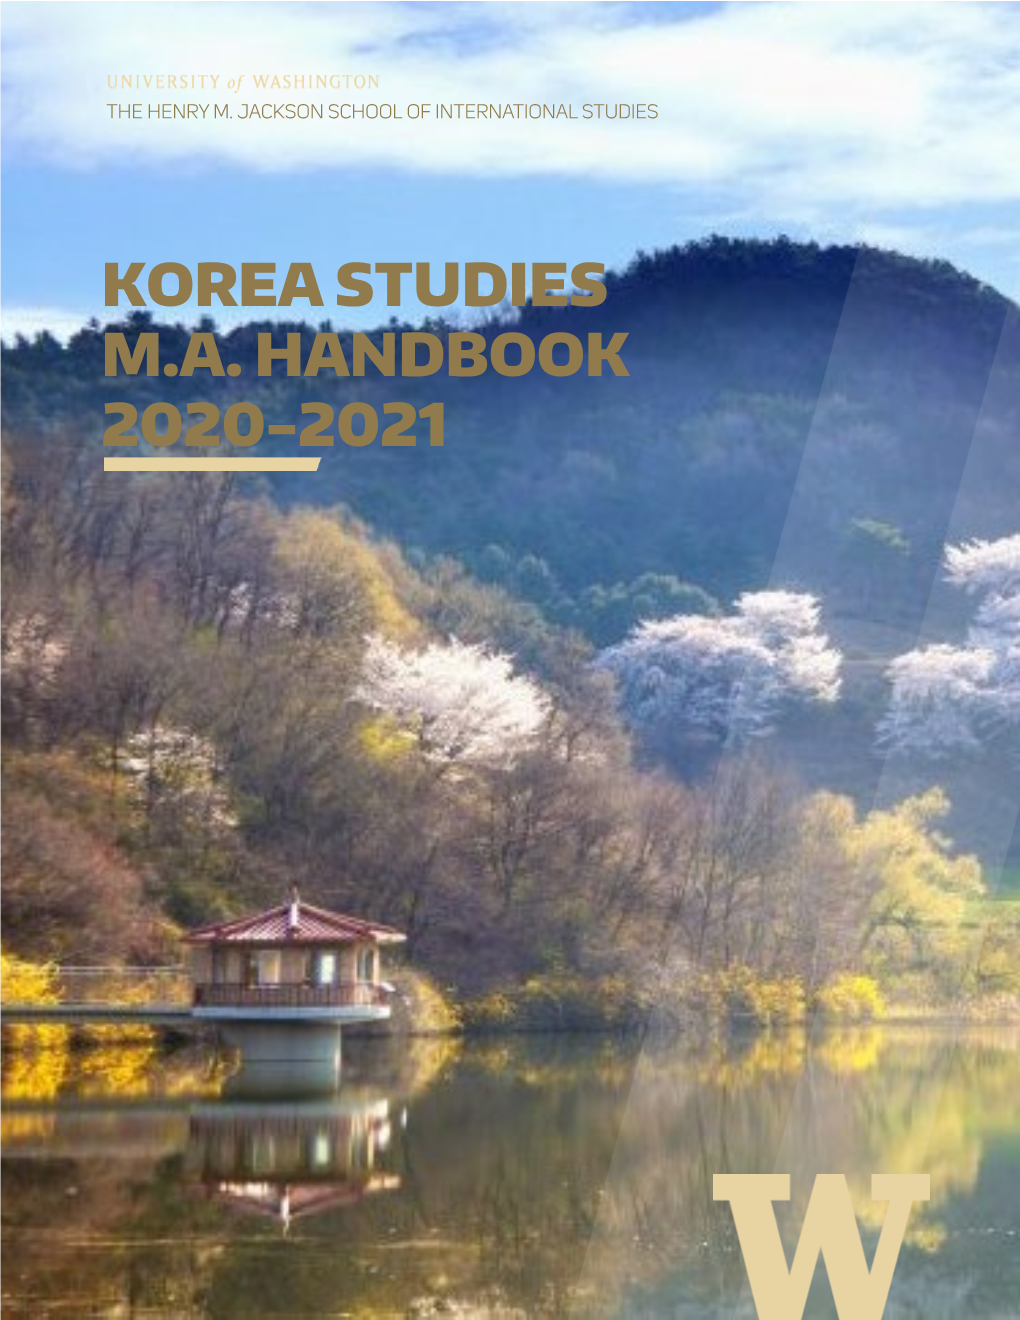 Korea Studies M.A. Handbook 2020-2021 Table of Contents